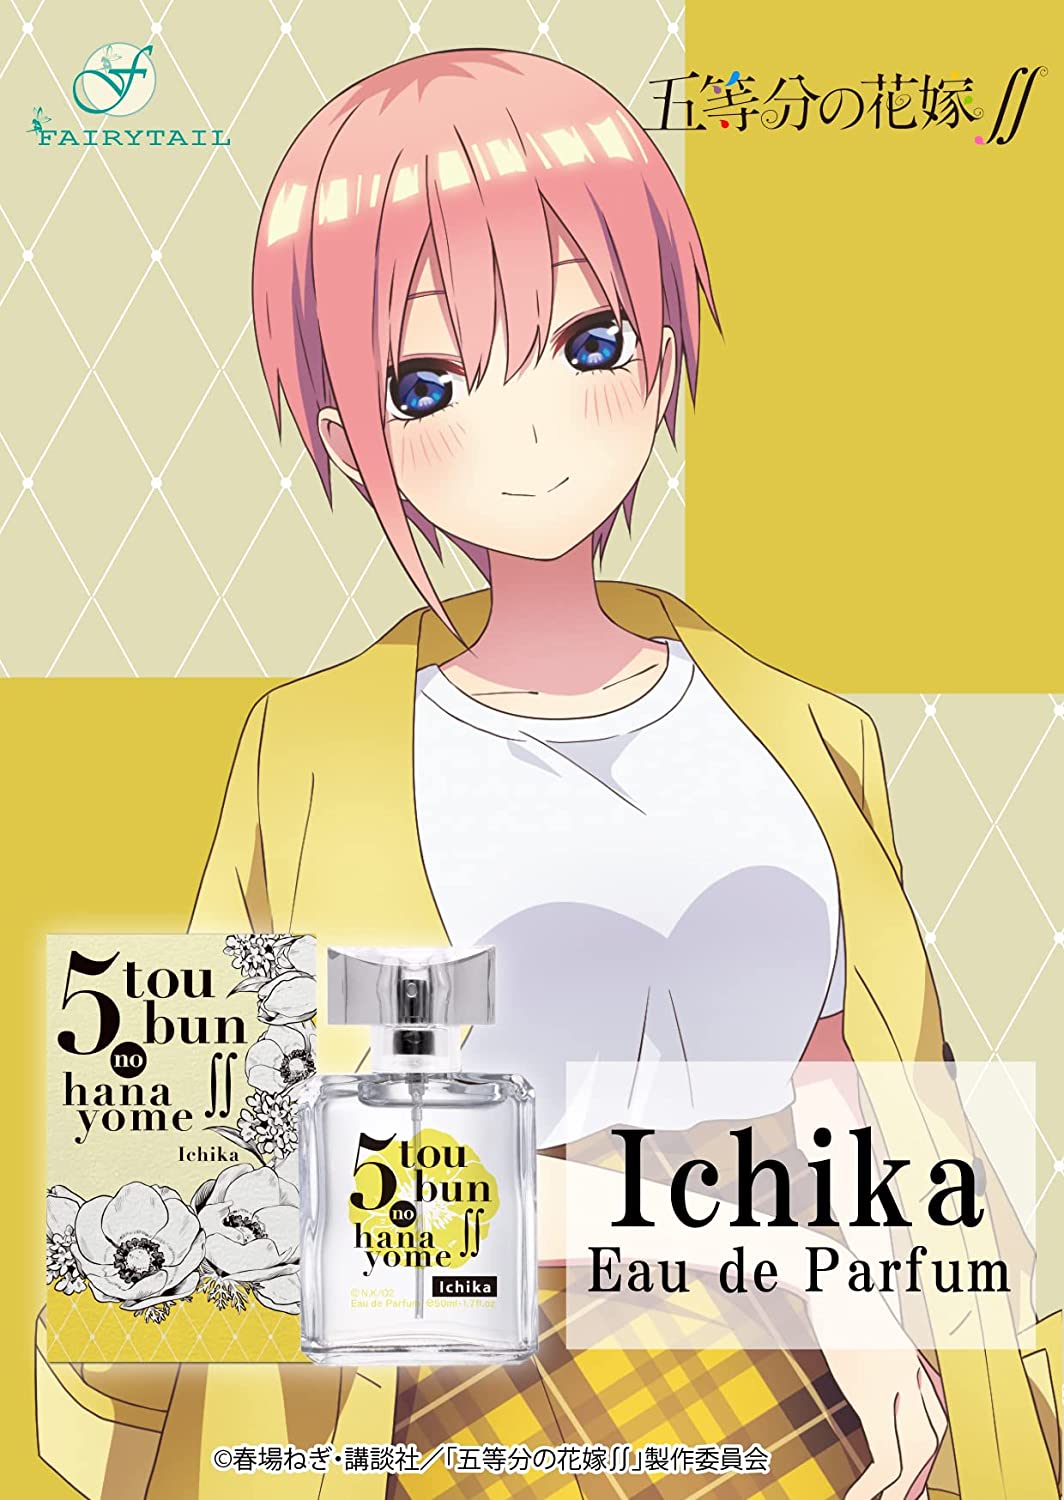 Miku (Gotoubun no Hanayome) inspira uma garrafa de licor no Japão